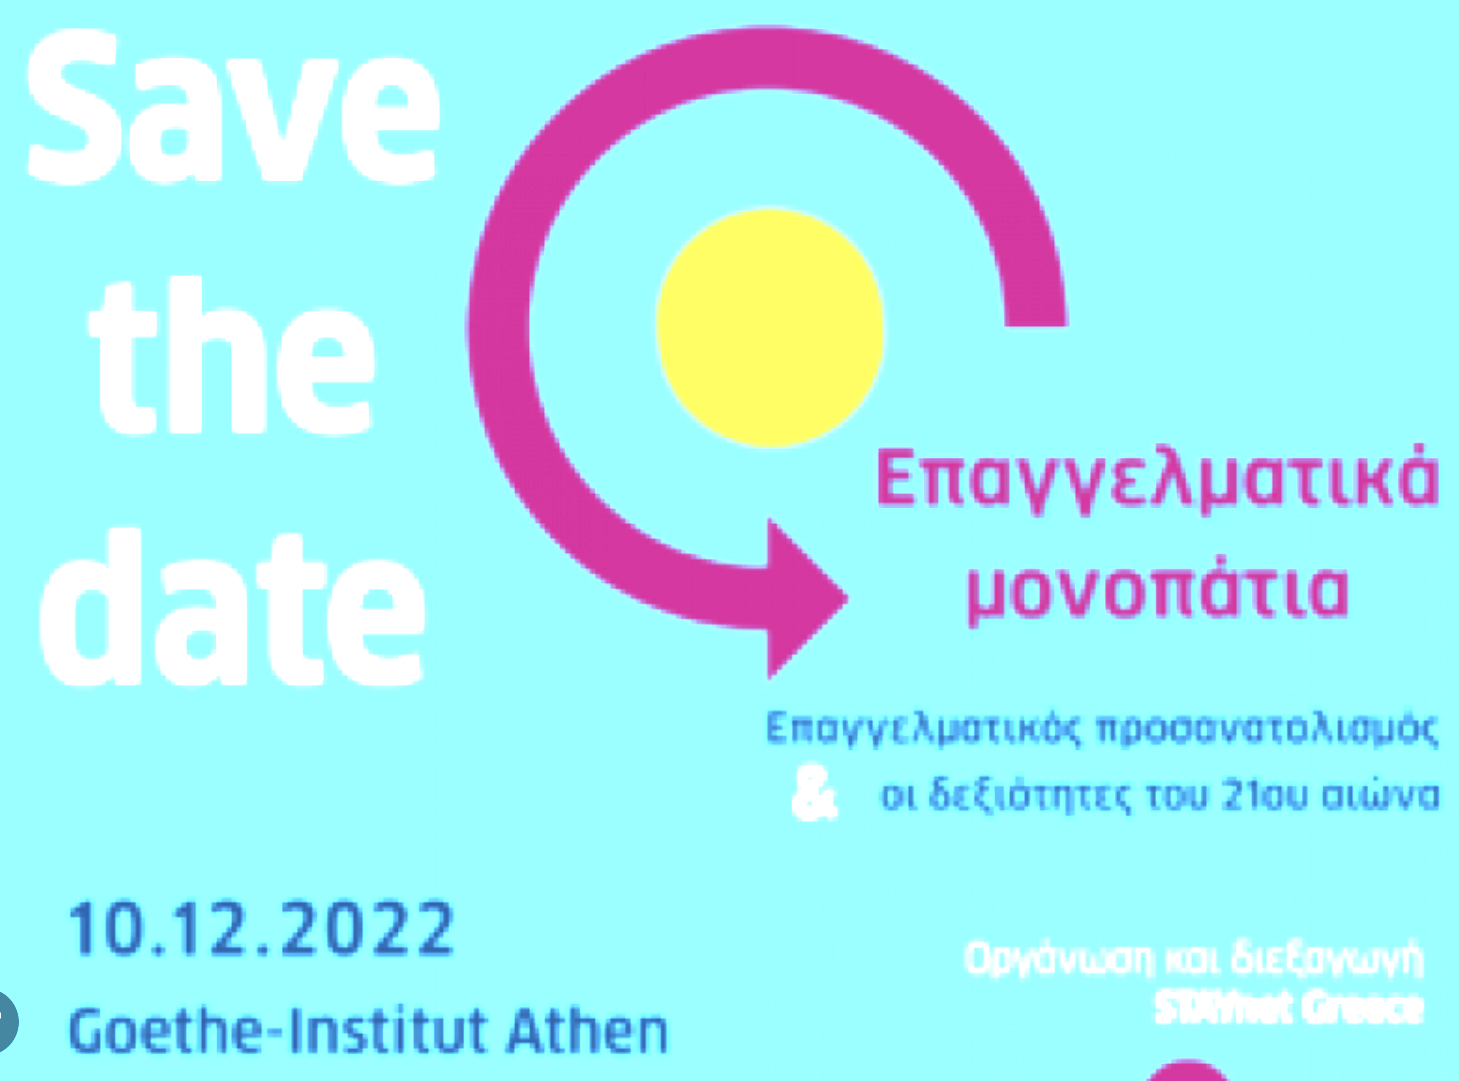 Συμμετοχή του ΕΒΕΟ-ΕΜΠ στην εκδήλωση «Επαγγελματικά Μονοπάτια», Ινστιτούτο Goethe, Σάββατο 10/12/2022, 11:00 – 17:00